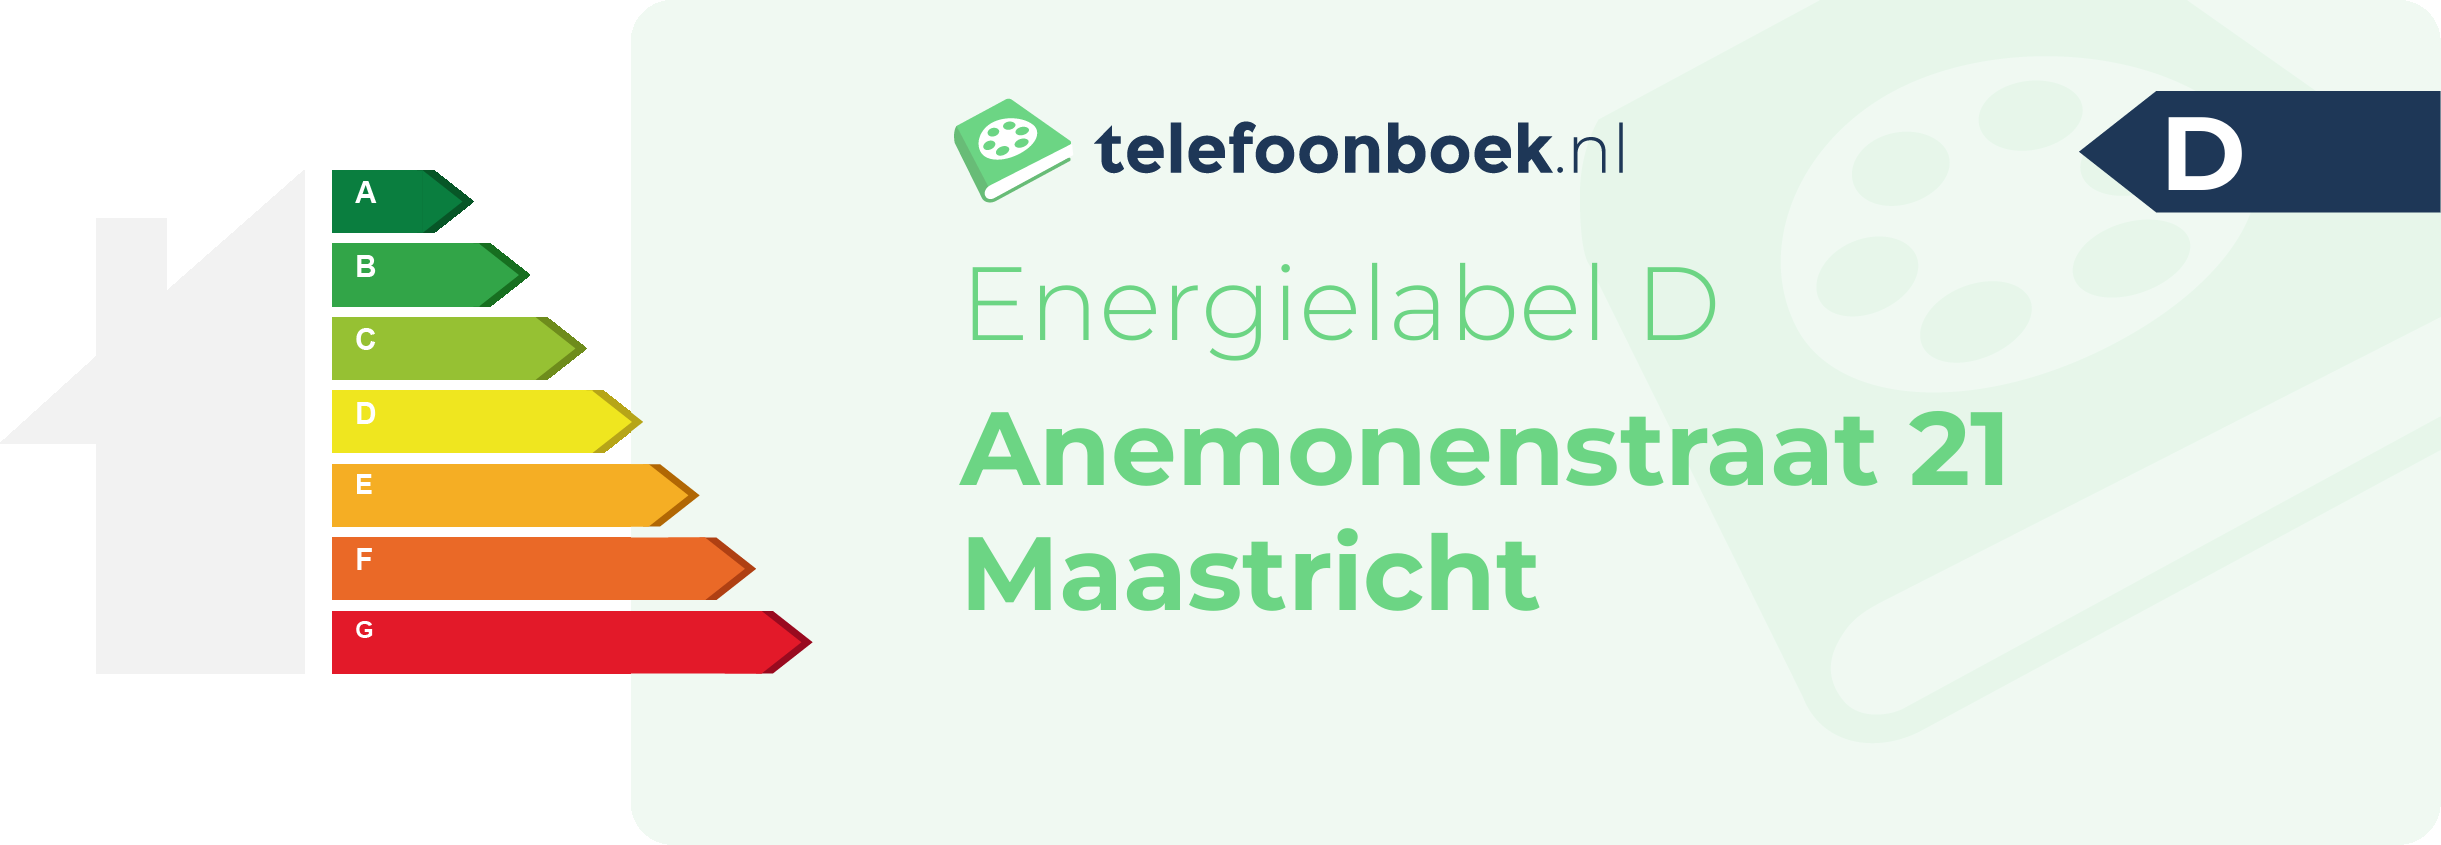 Energielabel Anemonenstraat 21 Maastricht